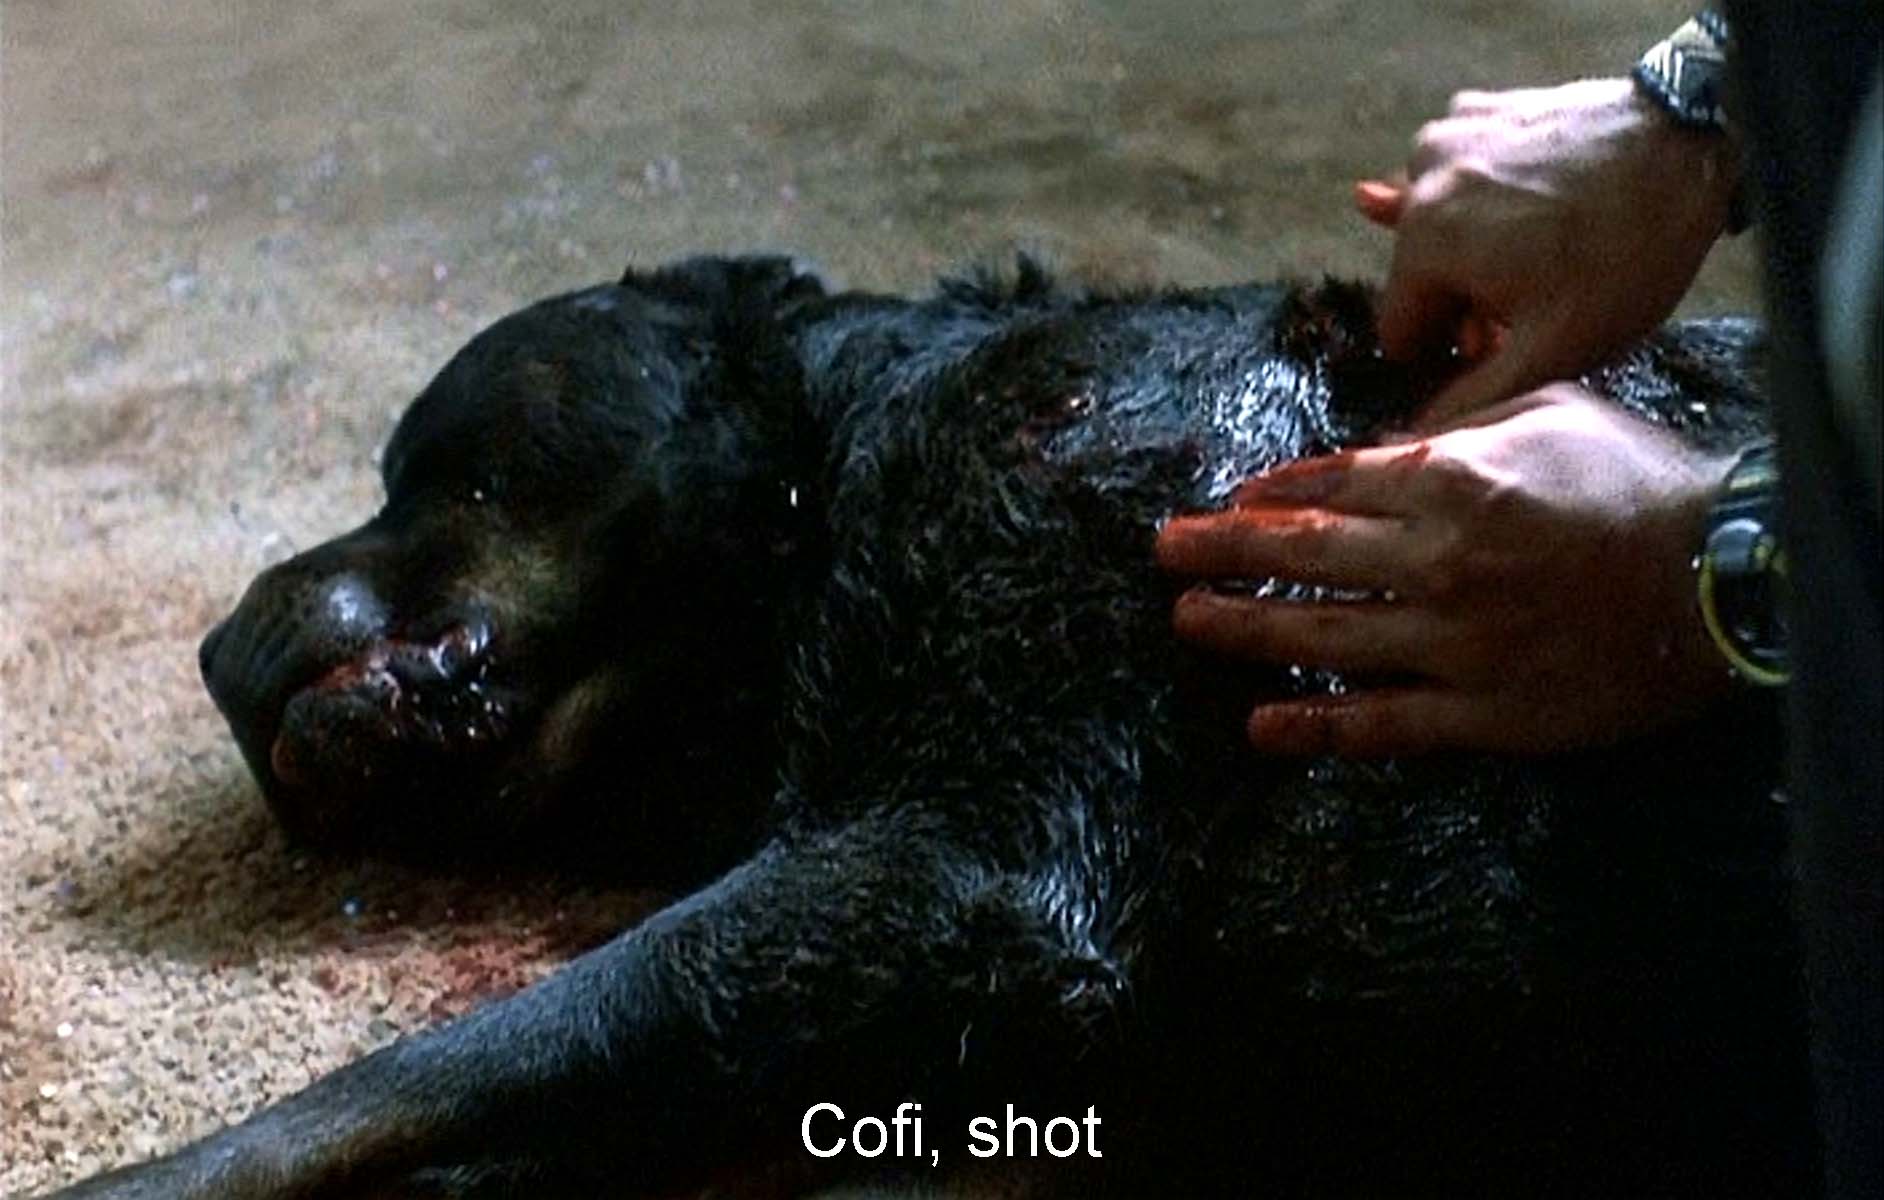 Cofi, shot